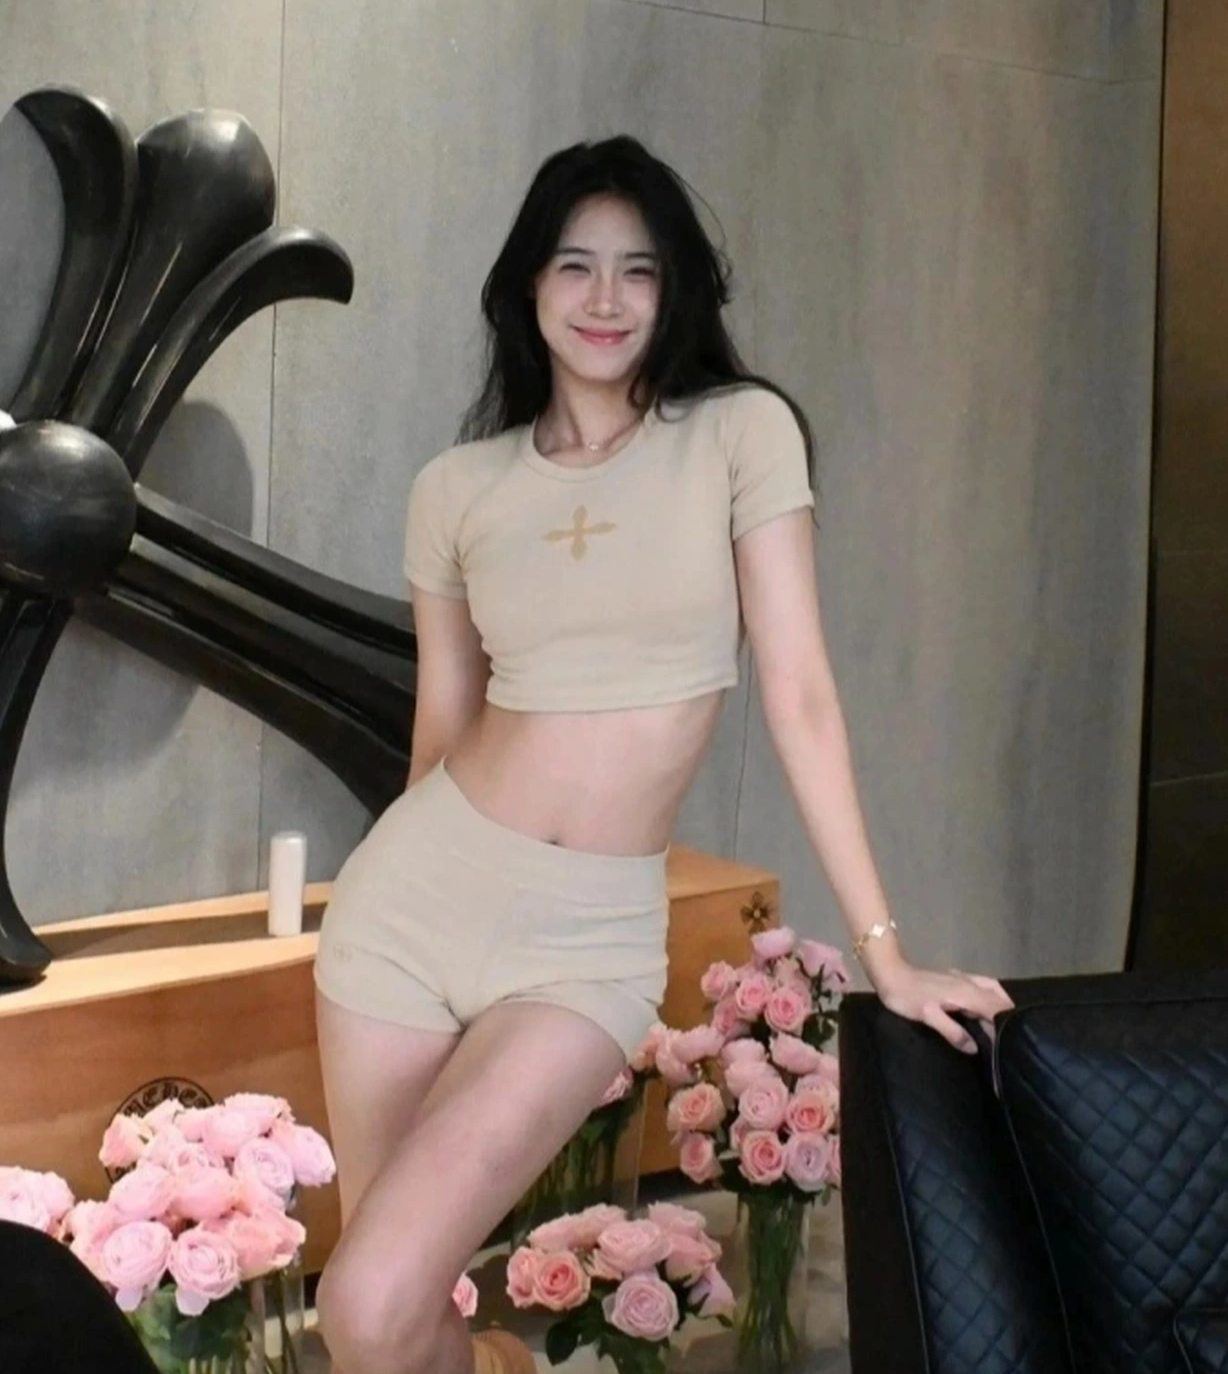 "Nữ thần bóng rổ" tộc Nội Mông cao 1,9m chăm mặc khoe tỷ lệ cơ thể đẹp - 4